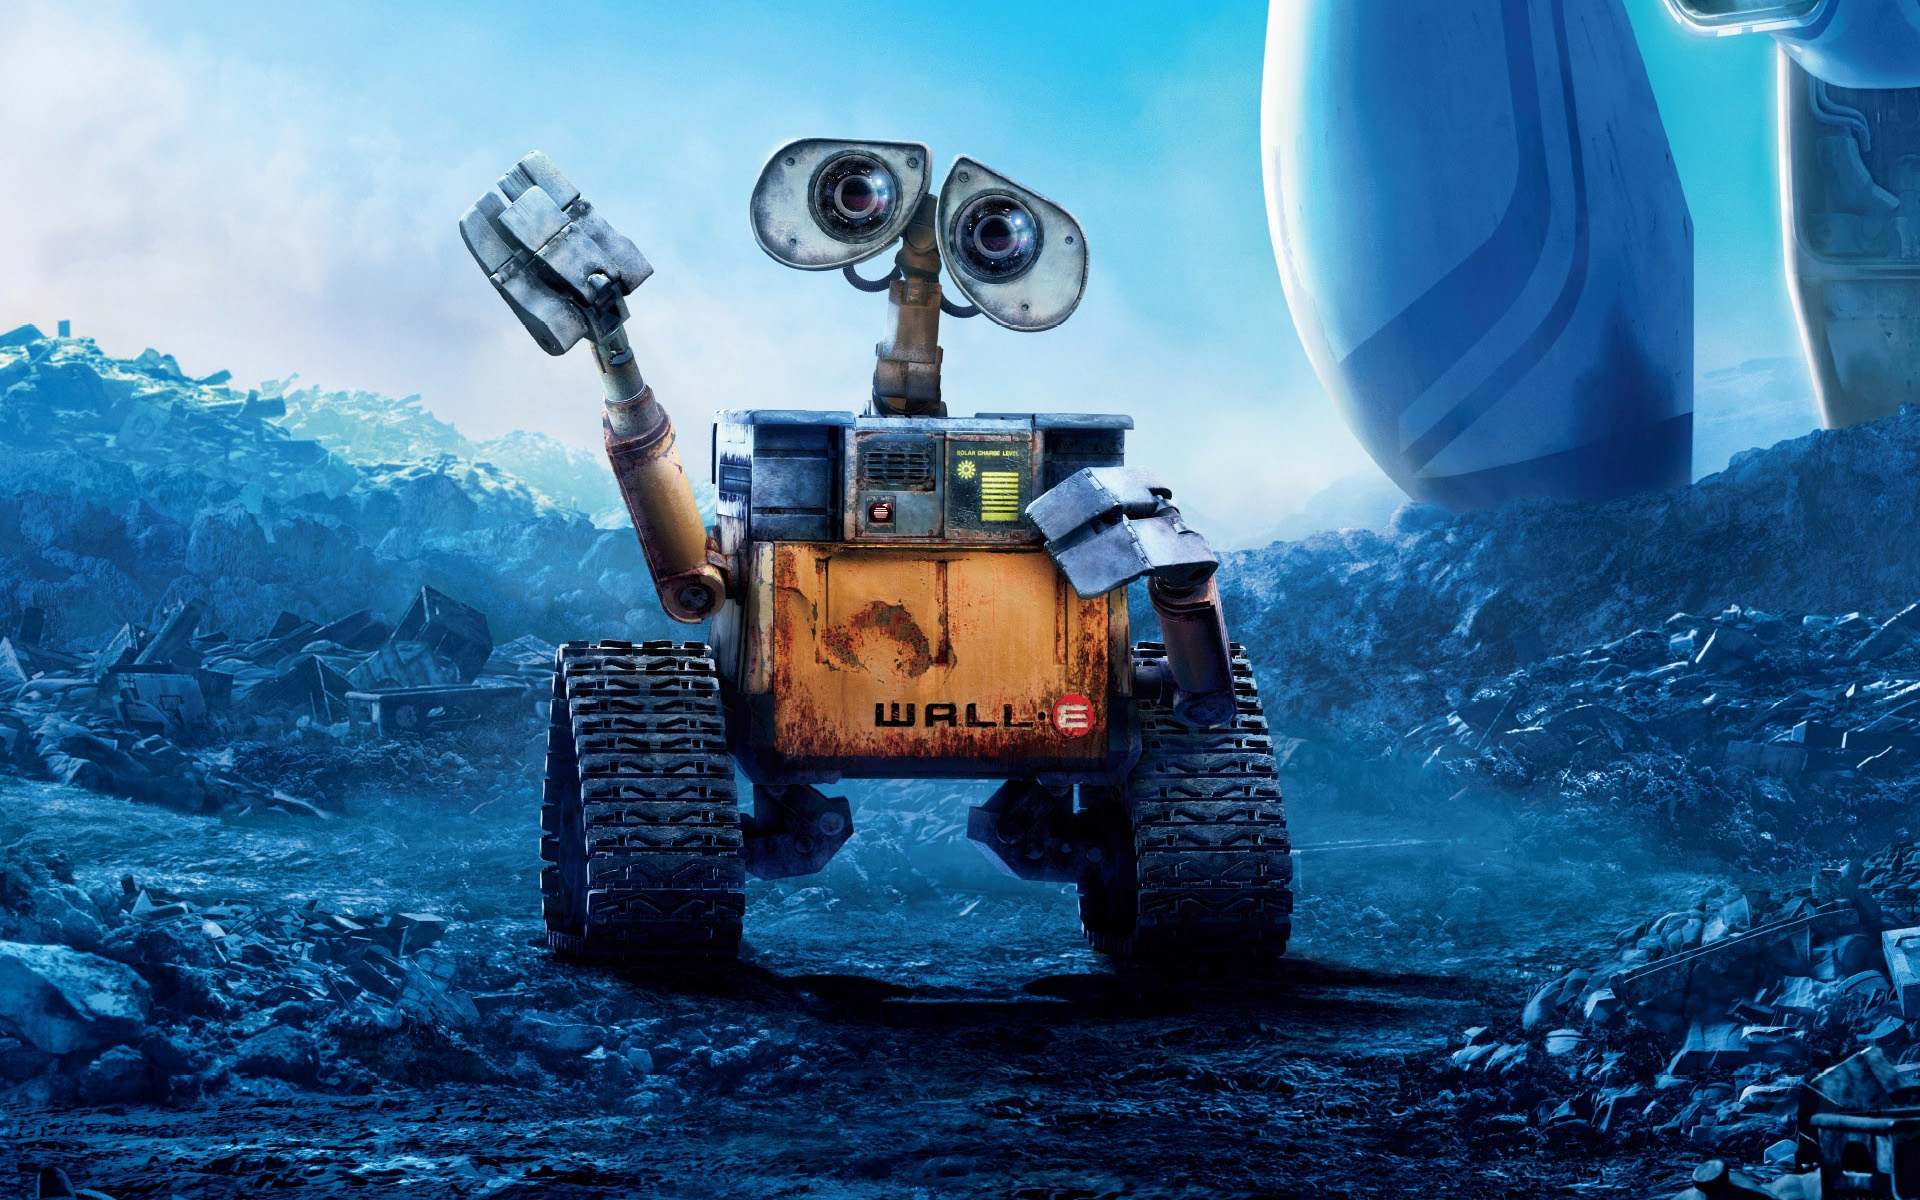 26 HQ Photos Wall E Movie Online - WALL·E (2008) - Official HD Trailer